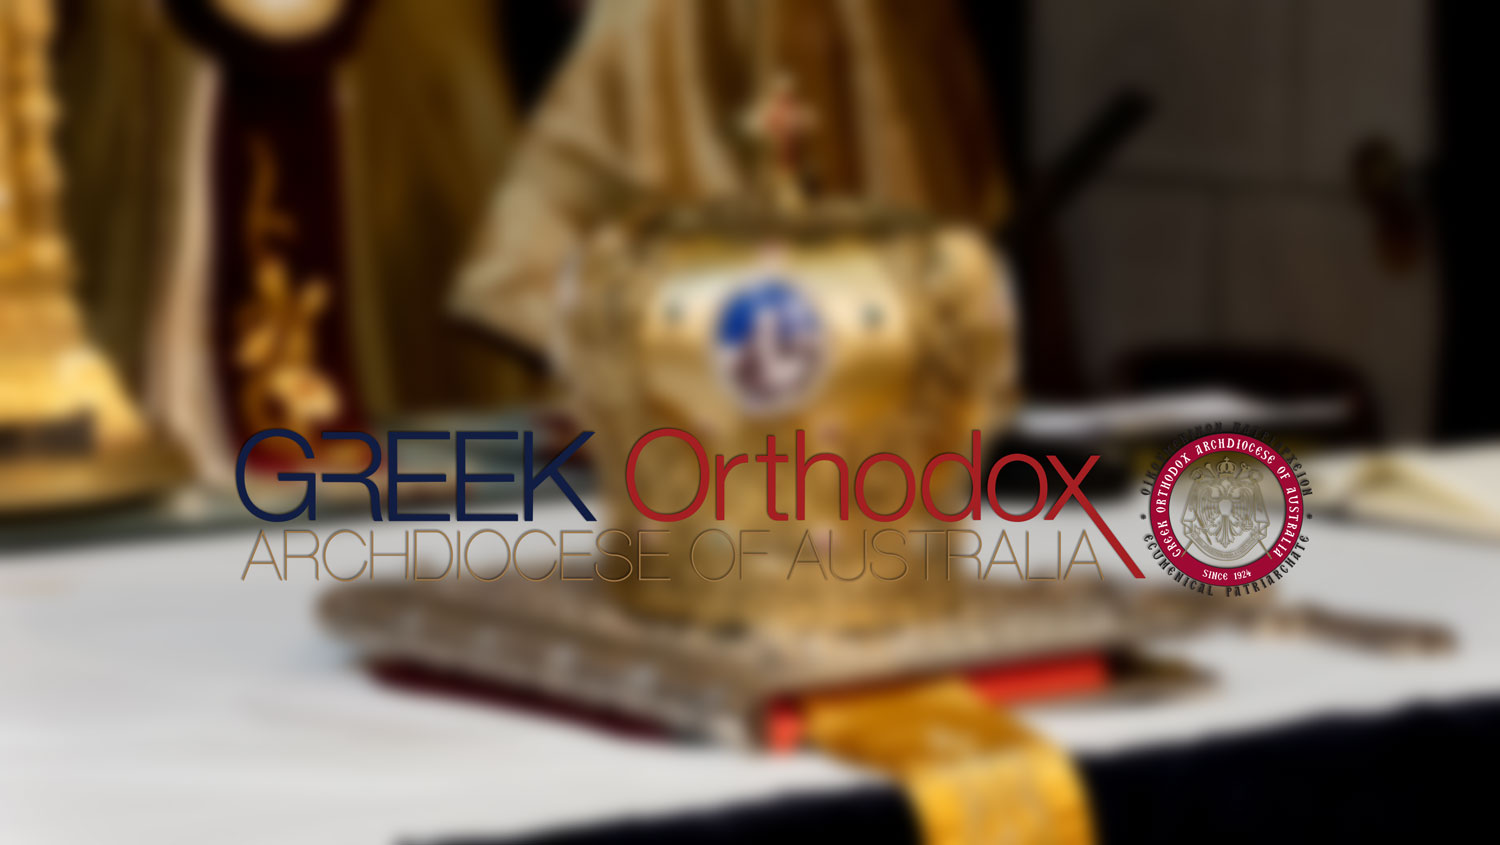 (c) Greekorthodox.org.au